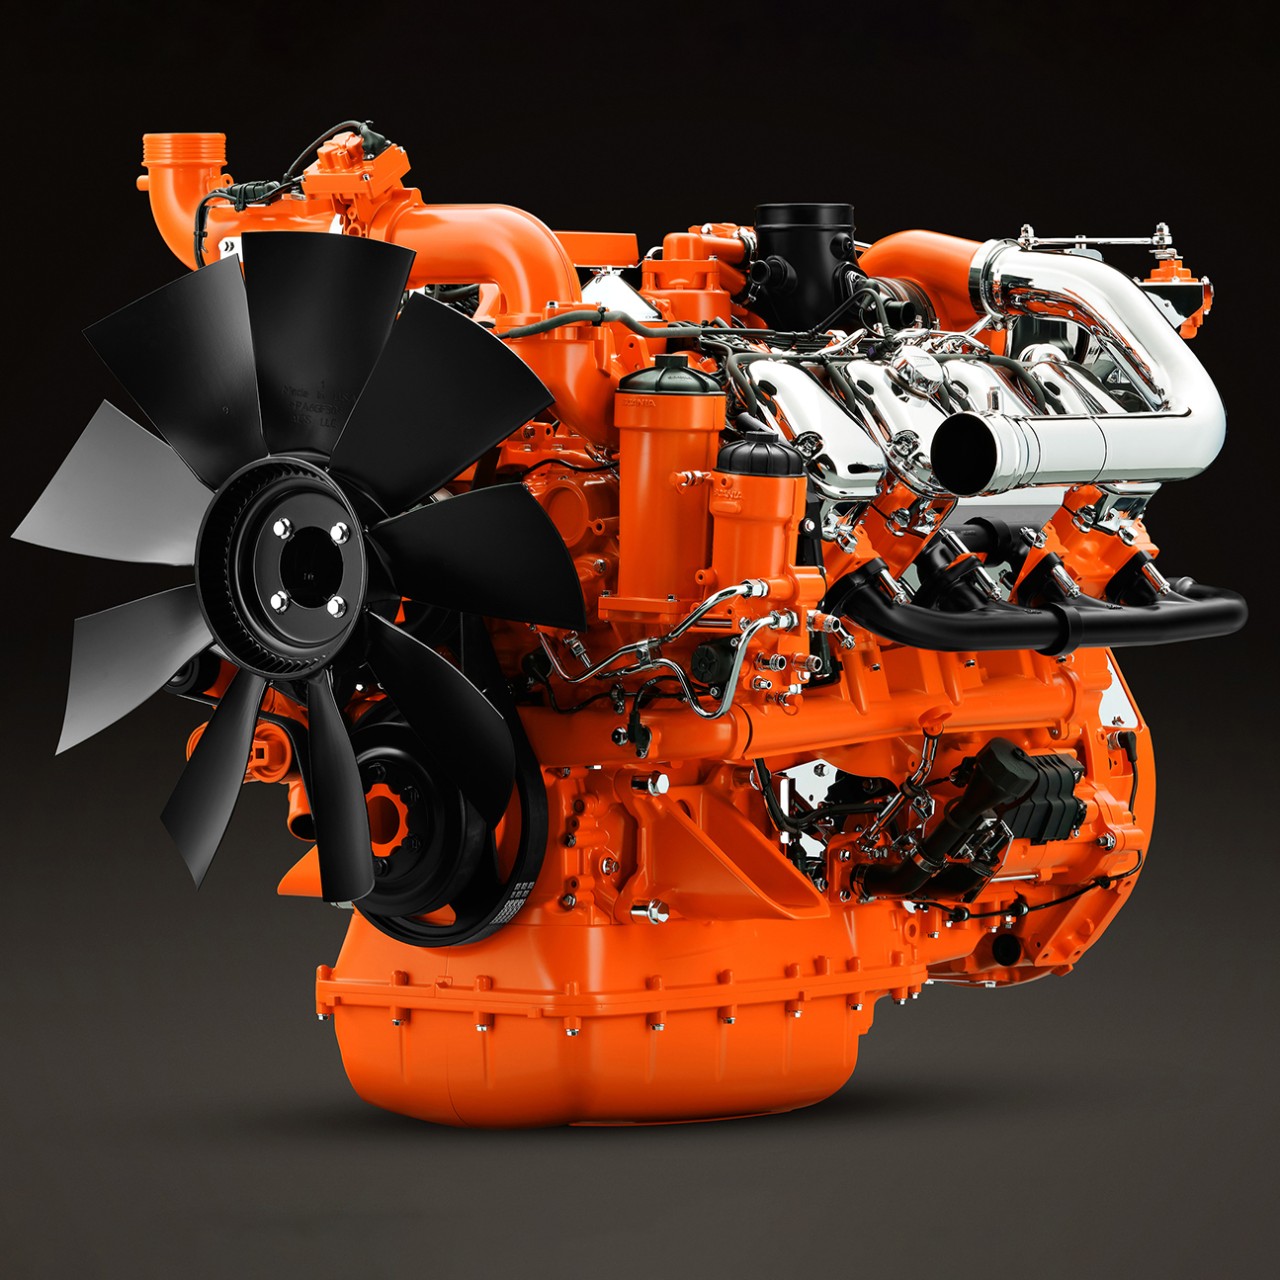  16-litrowy silnik przemysłowy Scania